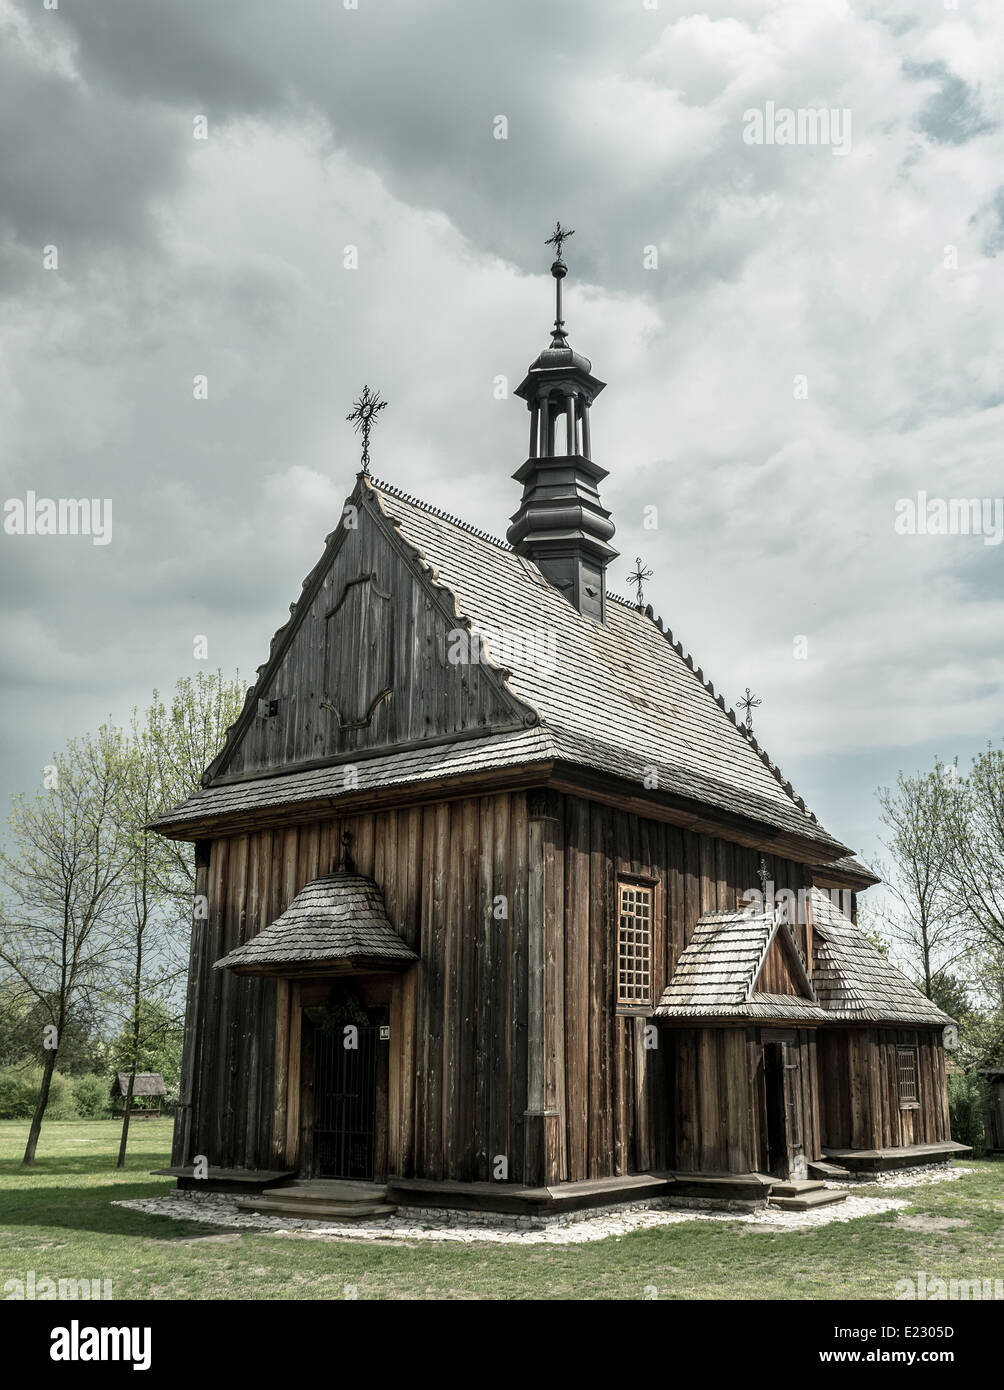 Historique ancienne église catholique en bois peu, Pologne Banque D'Images